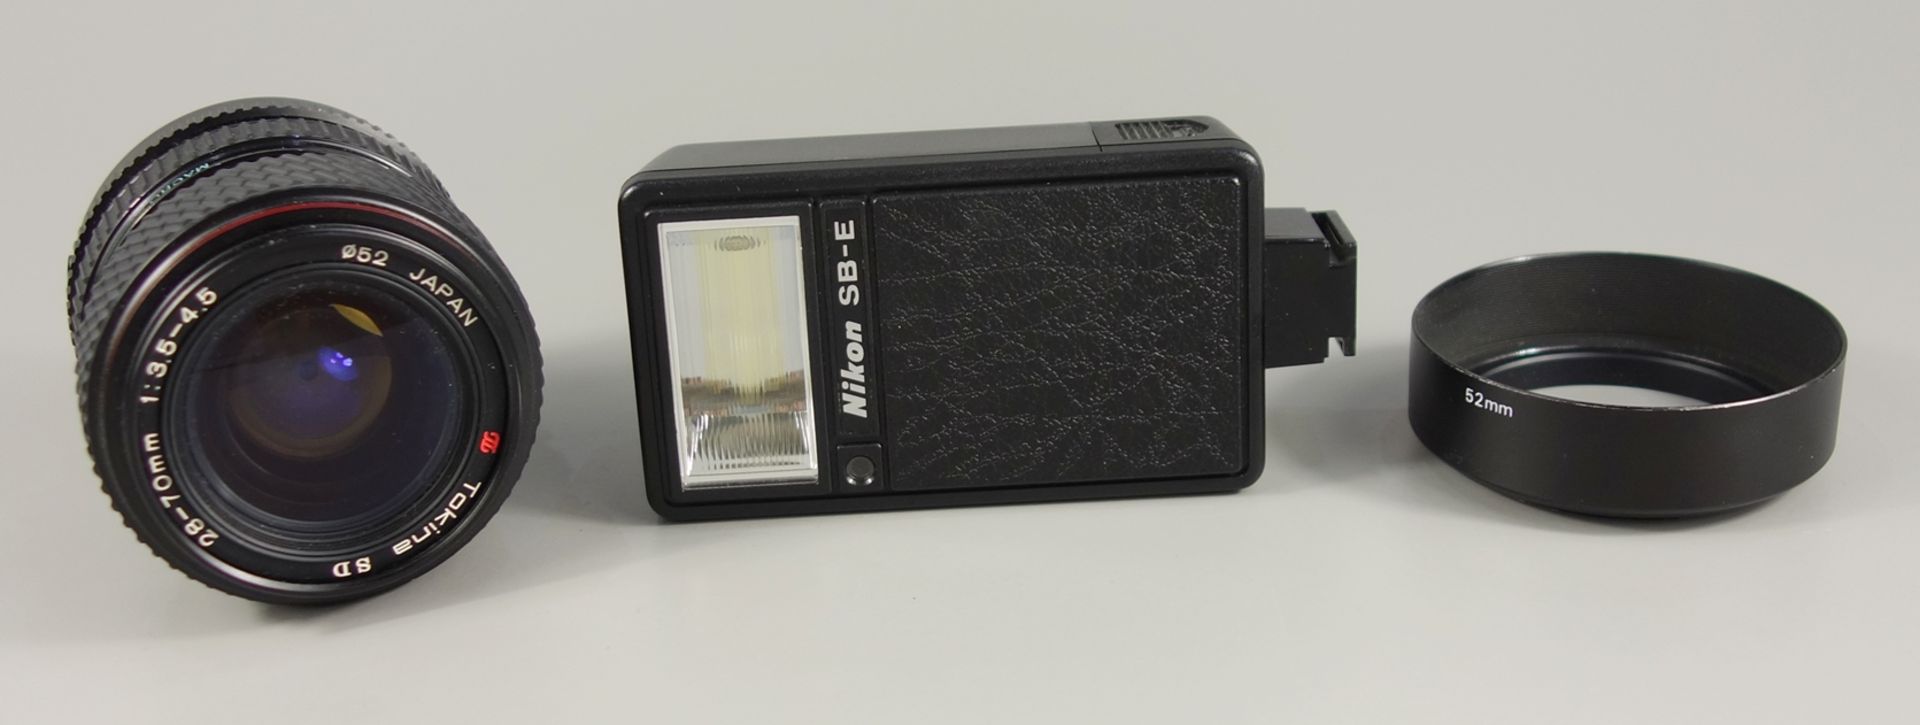 Nikon FM, Spiegelreflexkamera, späte 1970er Jahre, Serien-Nr. 2127907, Rückwand gelockert, sonst - Bild 5 aus 5